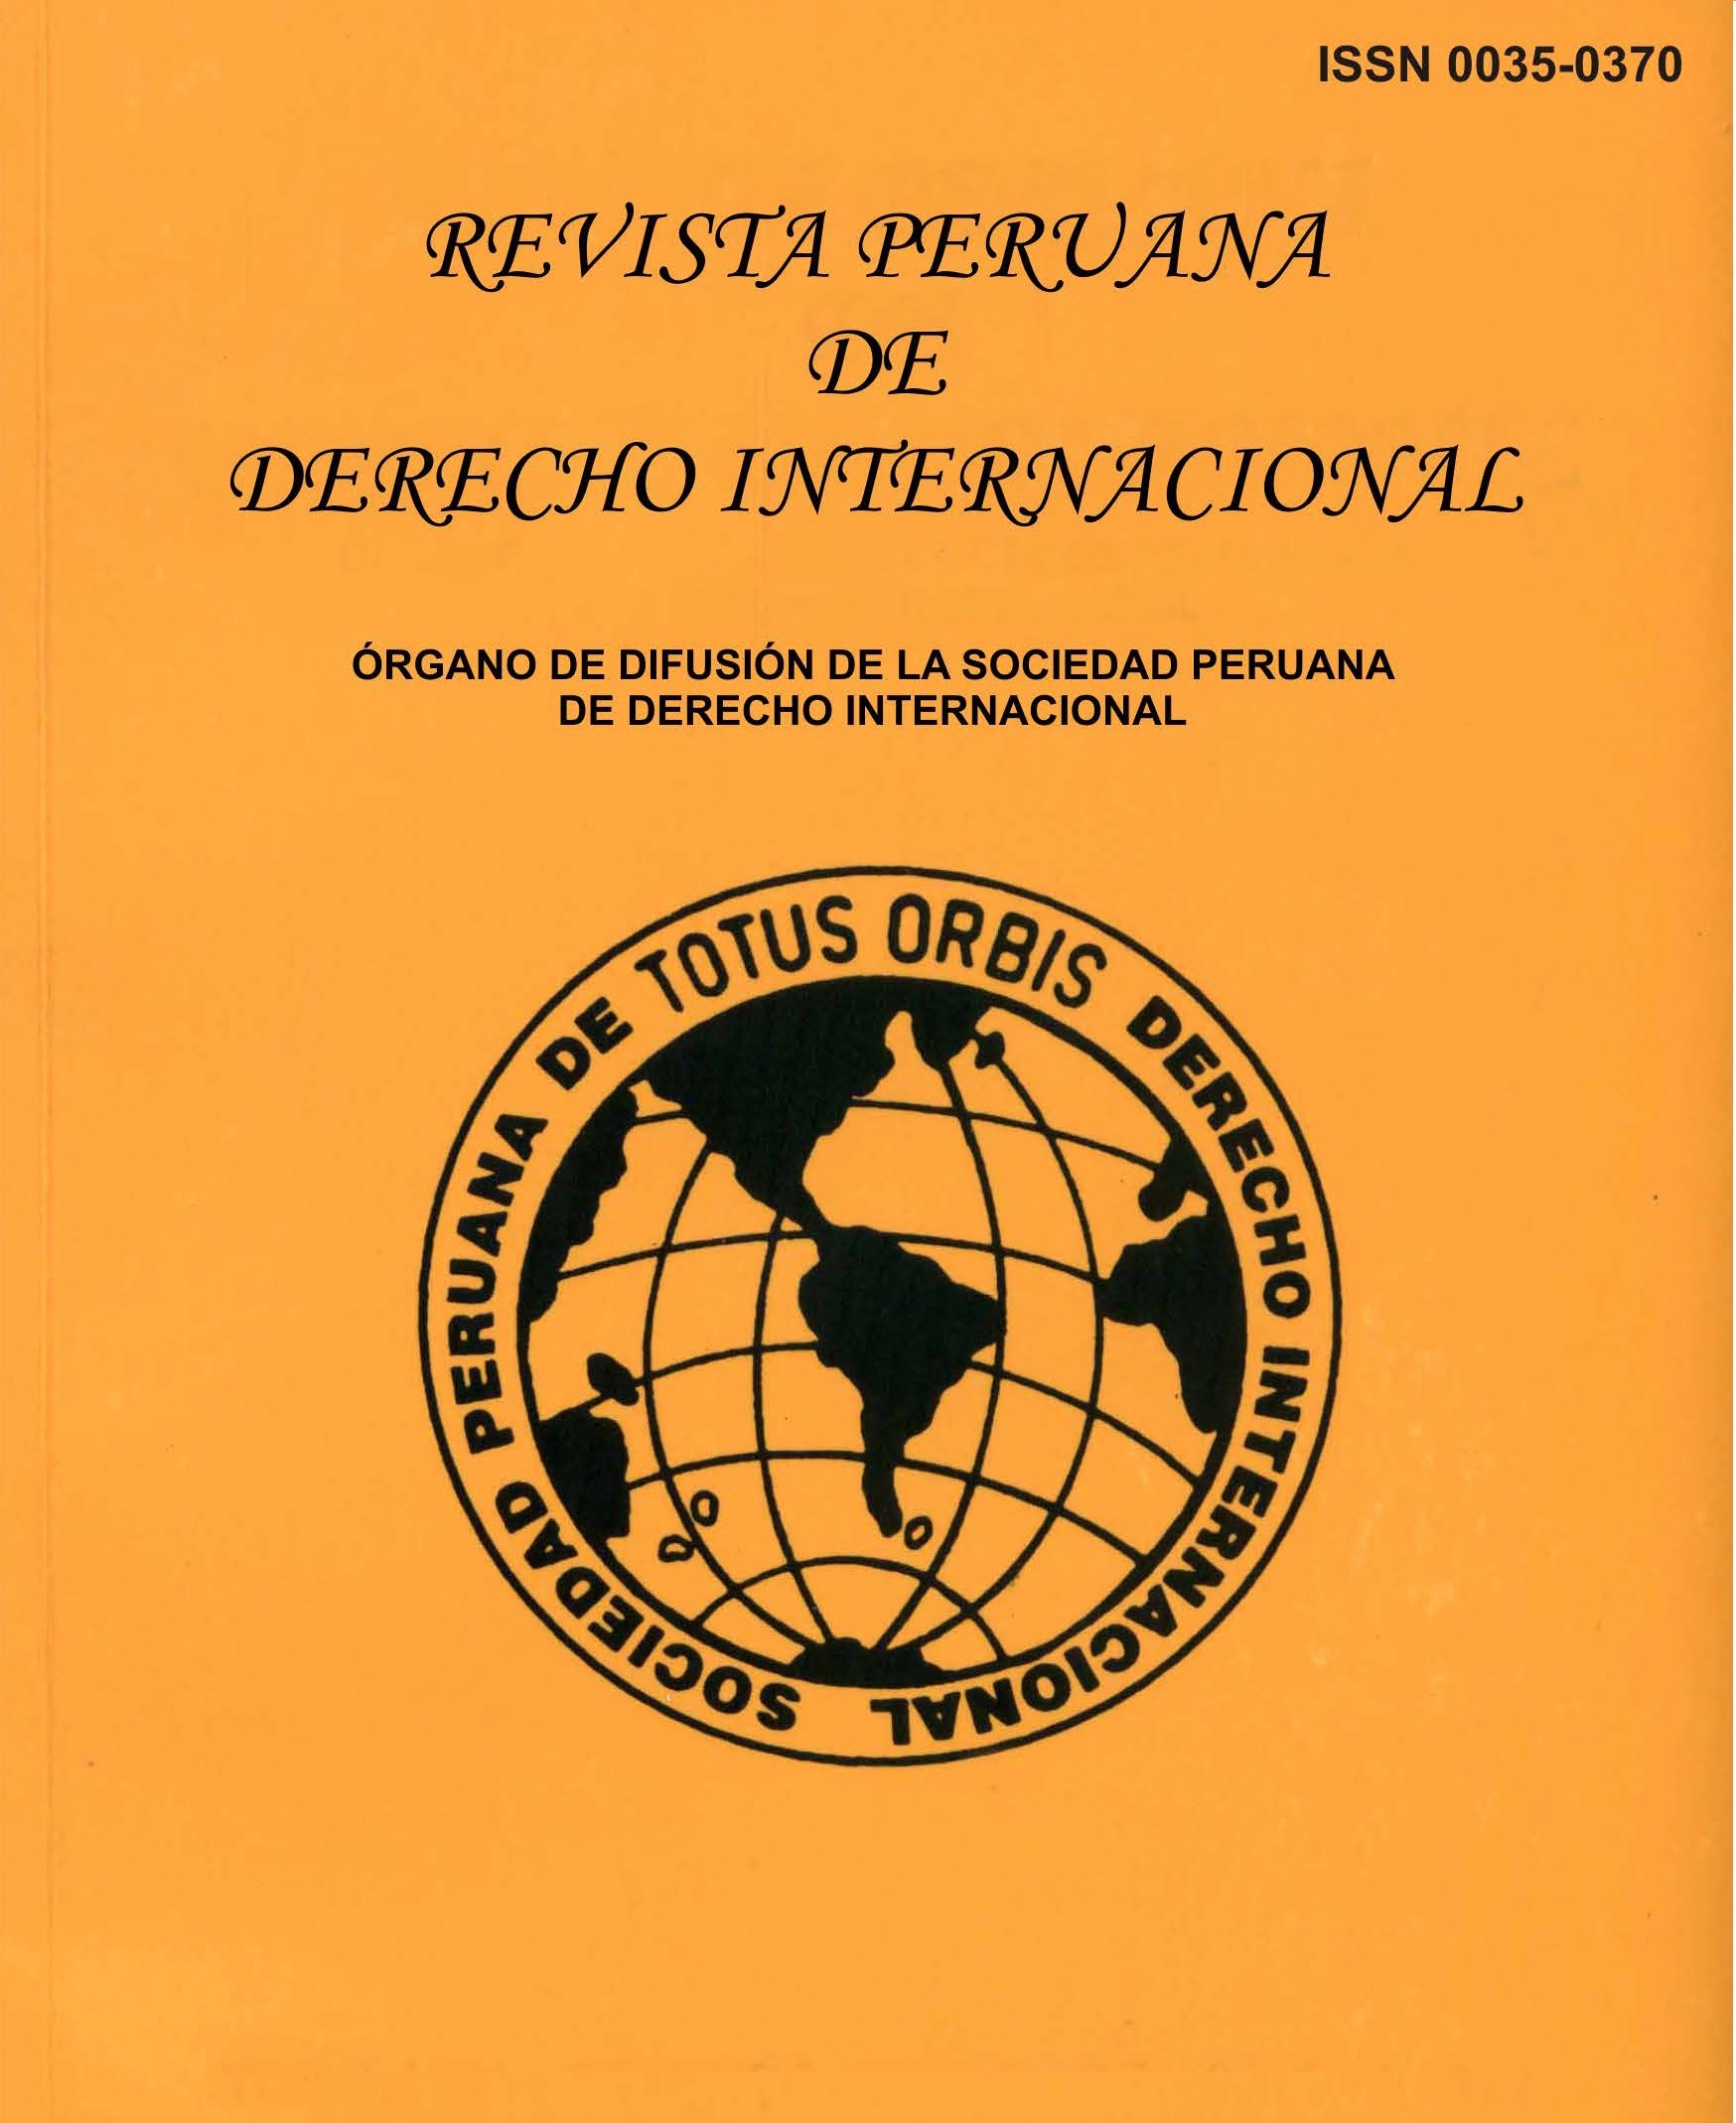 					Ver Núm. 167 (2021): Tomo LXXI Enero-Abril 2021 N°167, Revista Peruana de Derecho Internacional
				